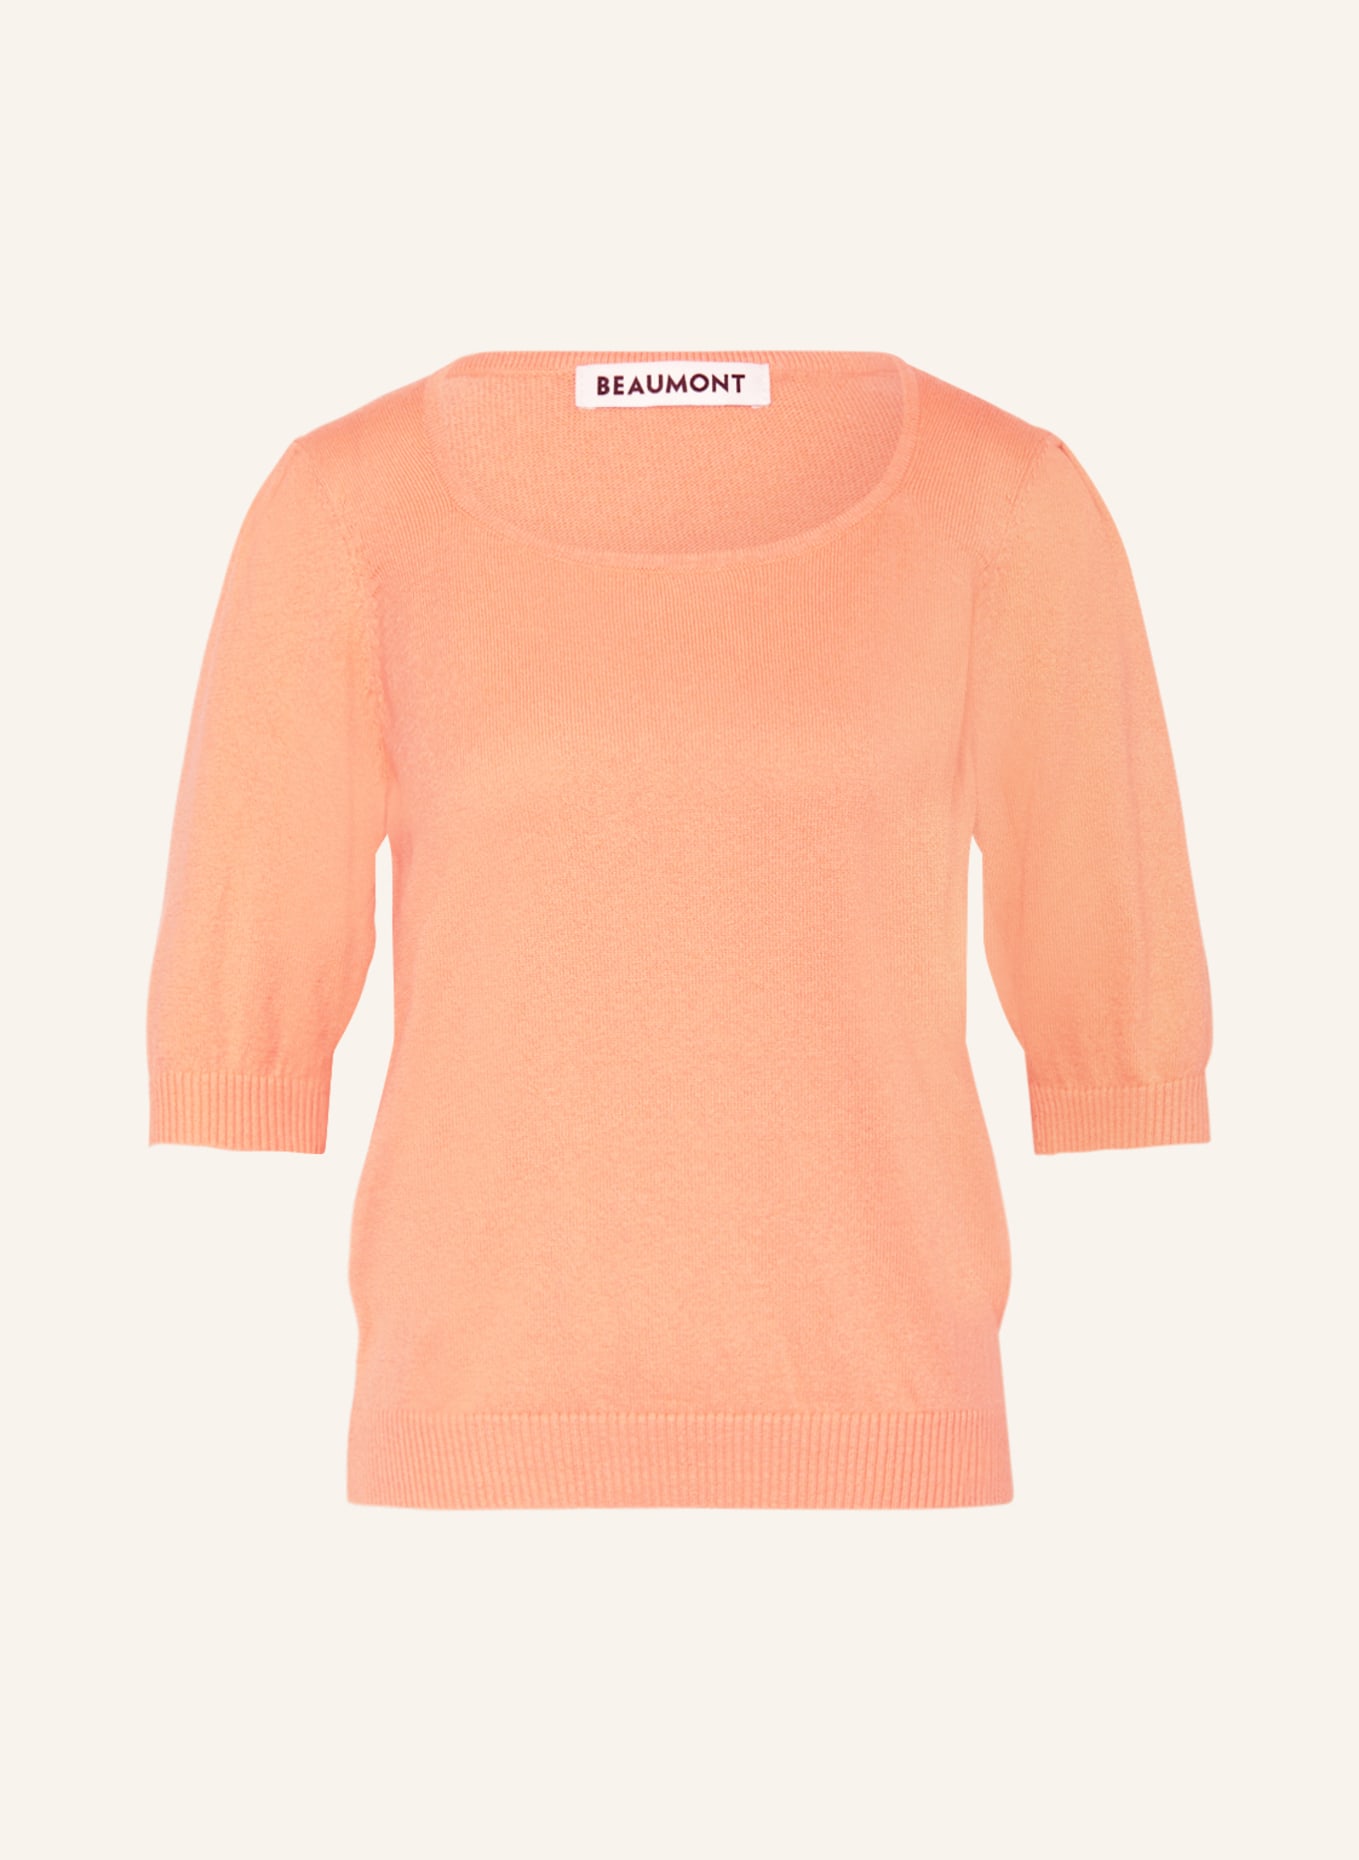 BEAUMONT Strickshirt EVER, Farbe: ORANGE (Bild 1)